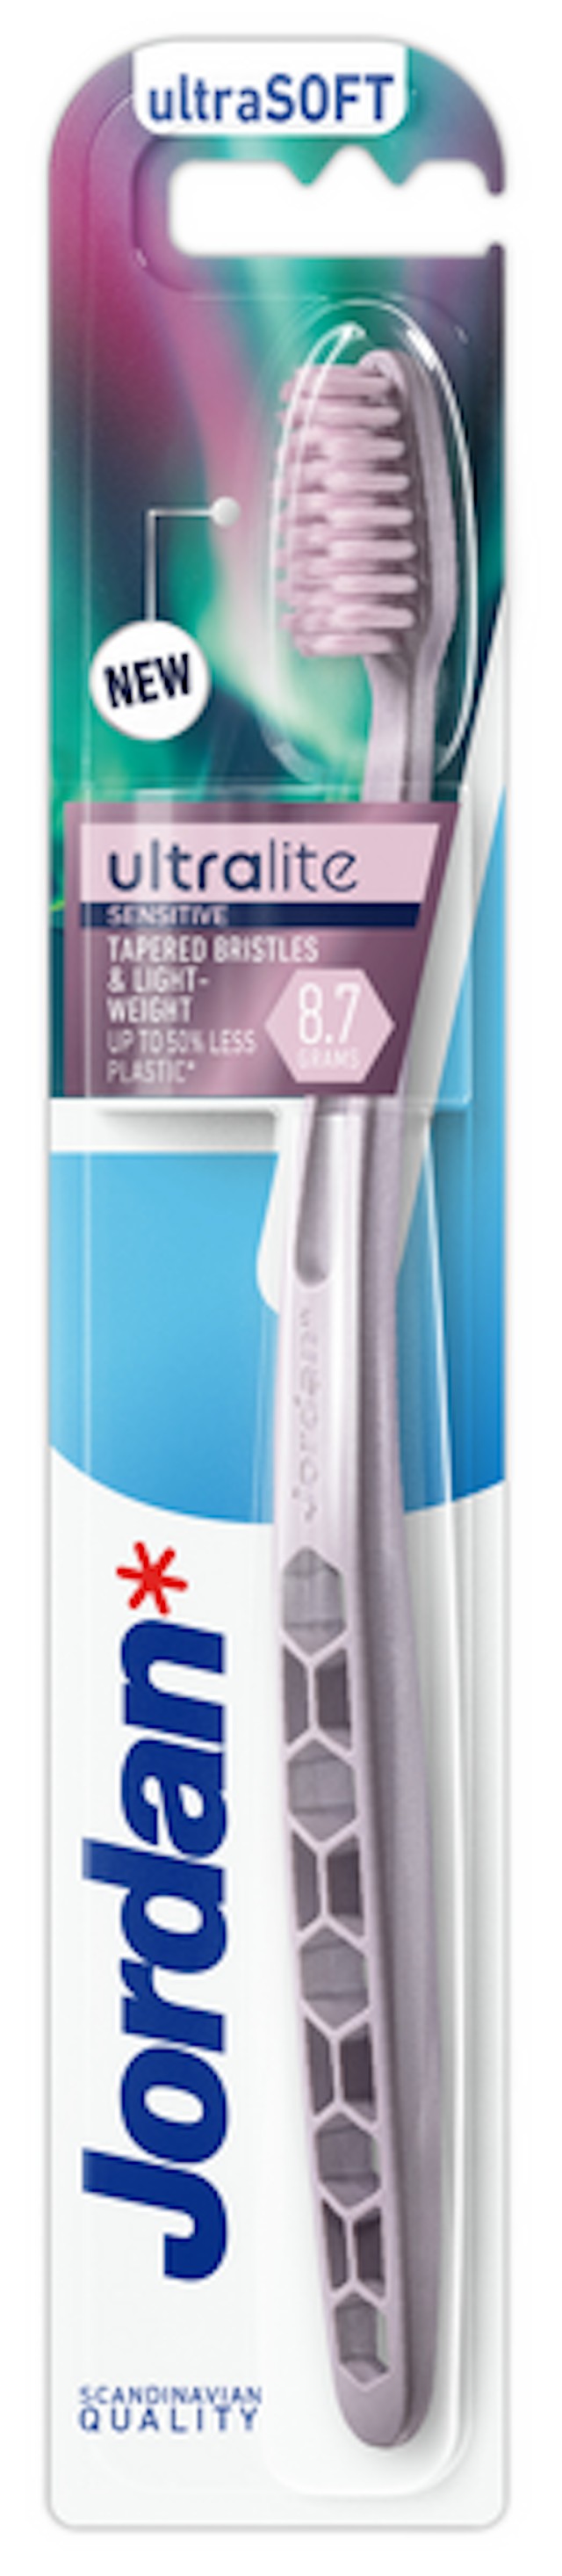 Jordan Ultralite Sensitive Ultra Soft Οδοντόβουρτσα Πολύ Μαλακή Χρώμα Μωβ 1 Τεμάχιο